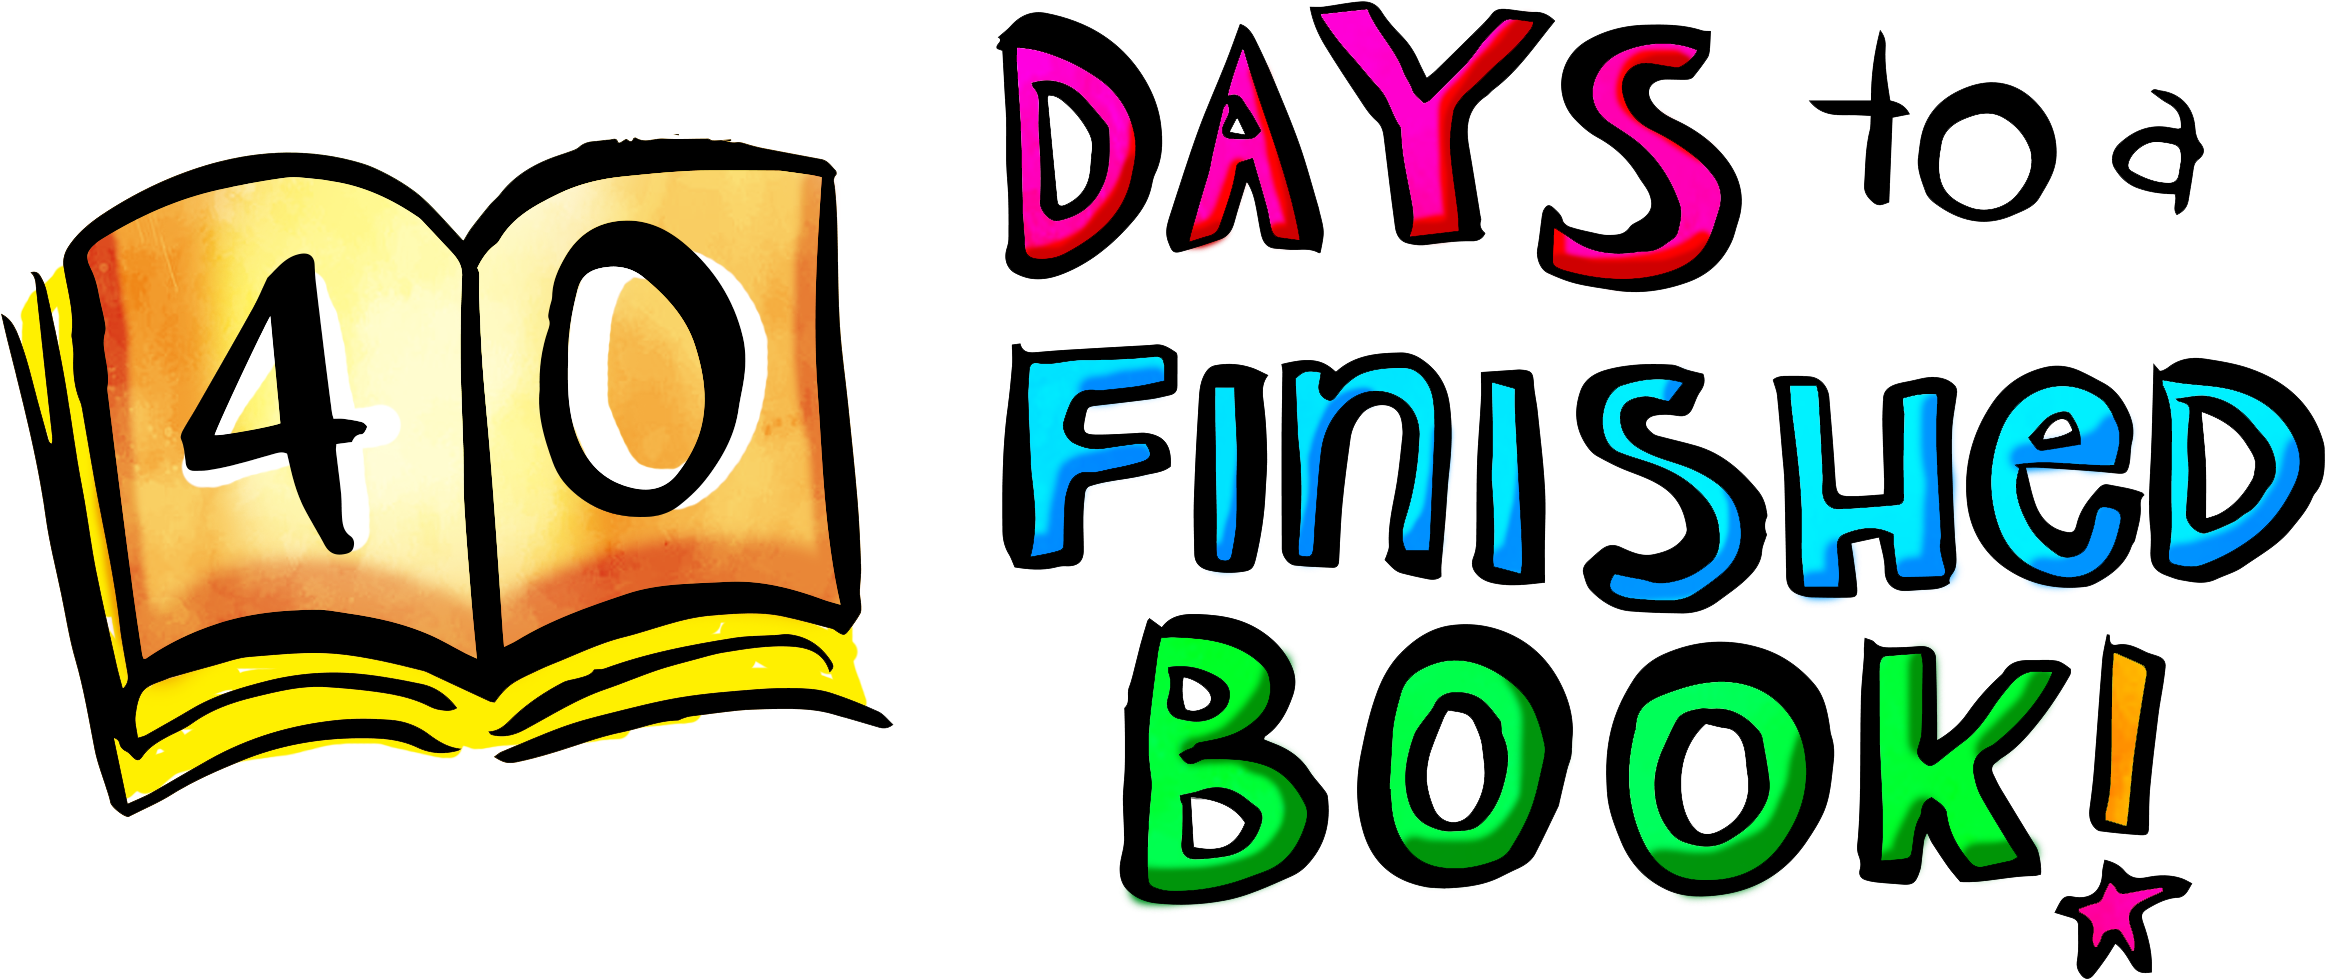 40 Days To A Finished Book - 40 Days To A Finished Book (2424x1070)